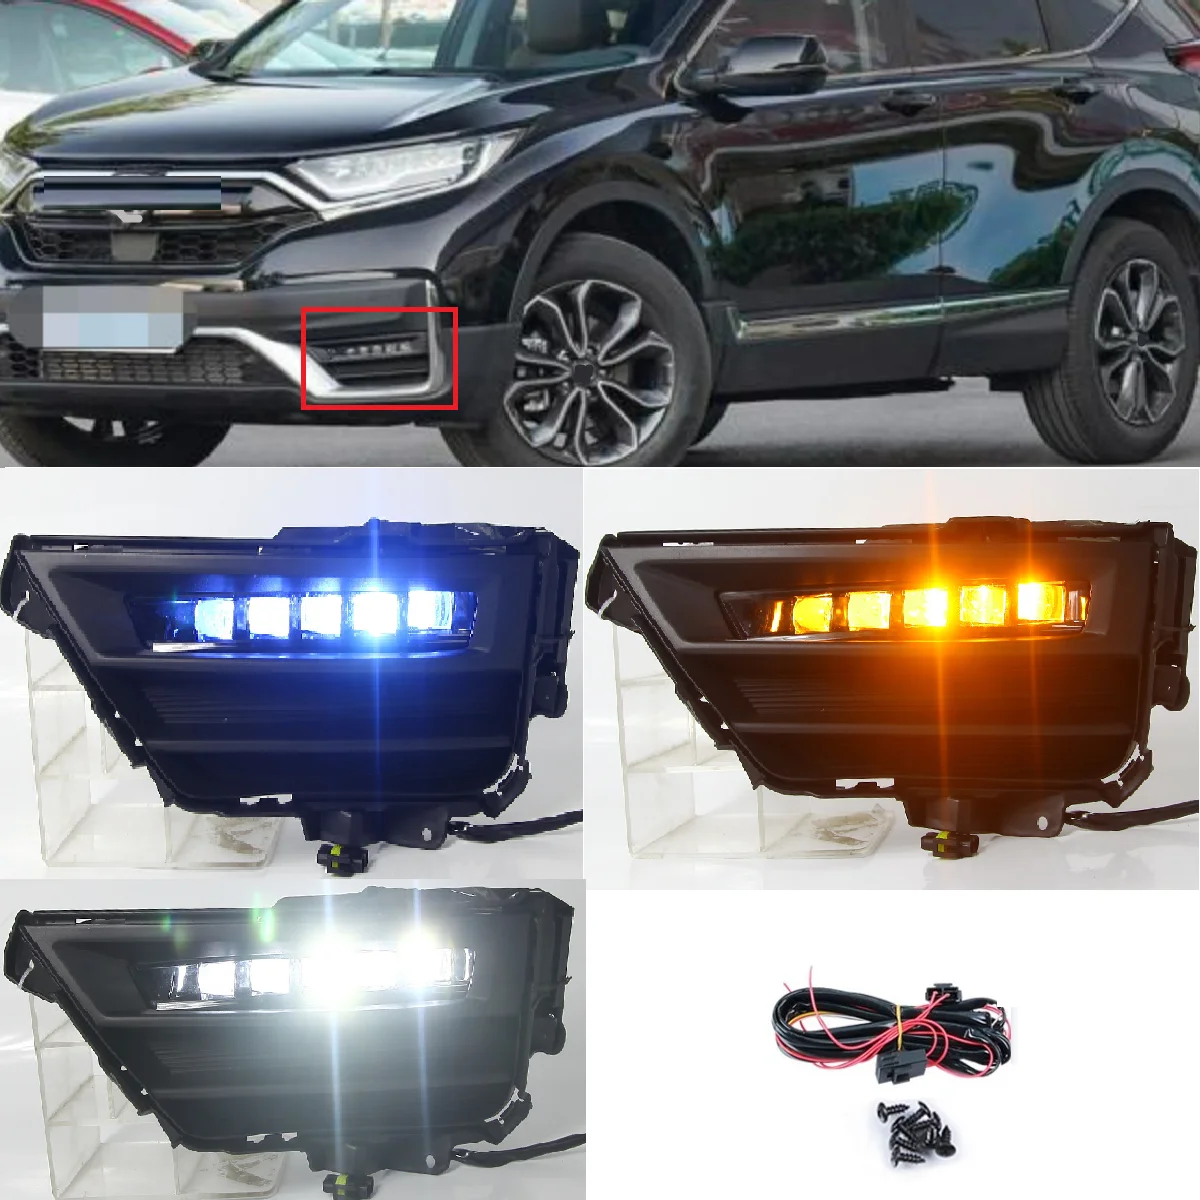 

LED Front bumper Fog light Foglight day light Daytime running lights for Honda CRV 2020 2021 2022